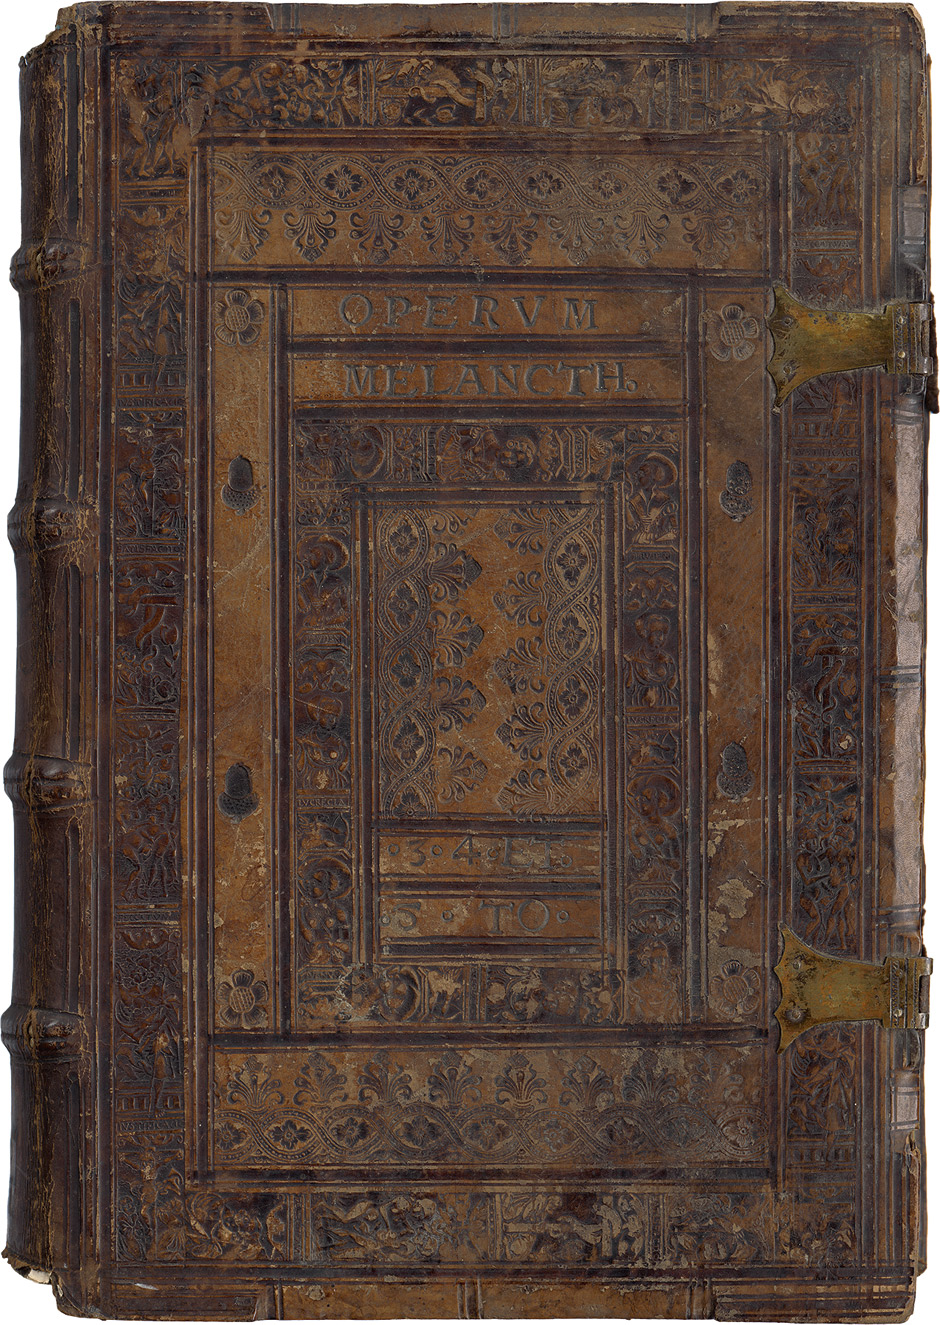 Lot 1098, Auction  115, Melanchthon, Philipp, Reich geprägter dunkelbrauner Kalbslederband eines ausgeschiedenen Exemplares aus der einstigen